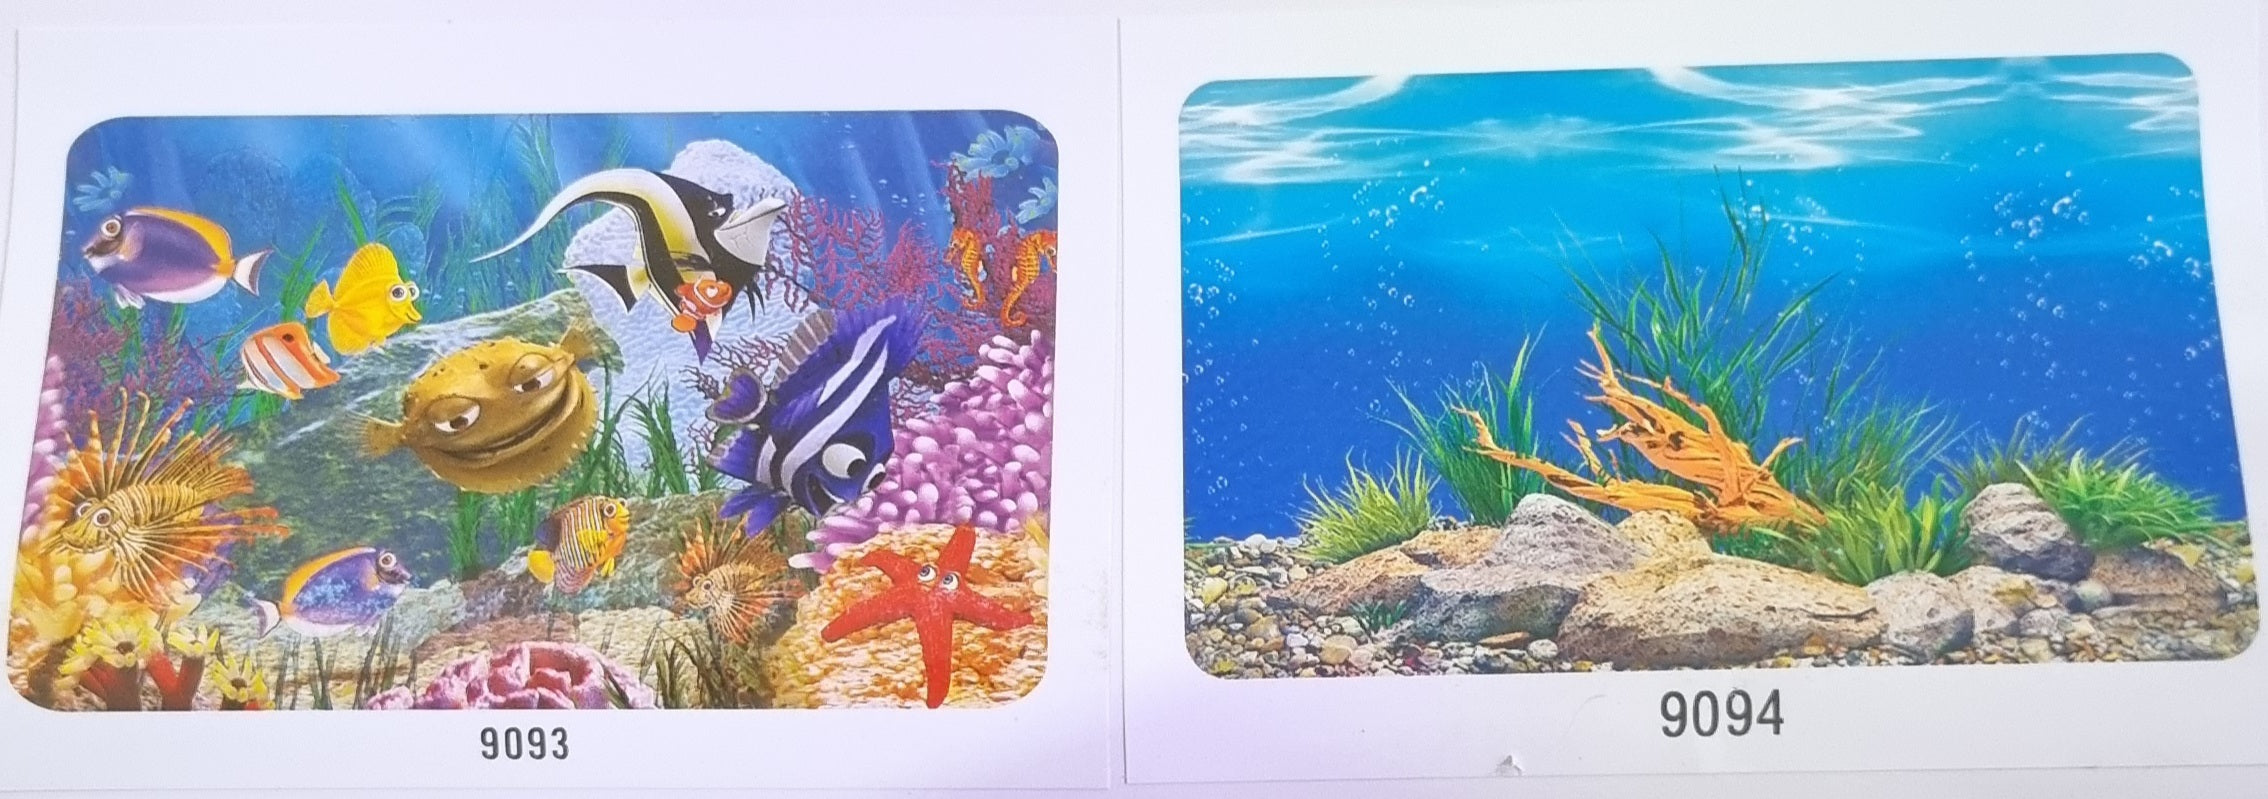 Aquarium Backgrounds 50cm